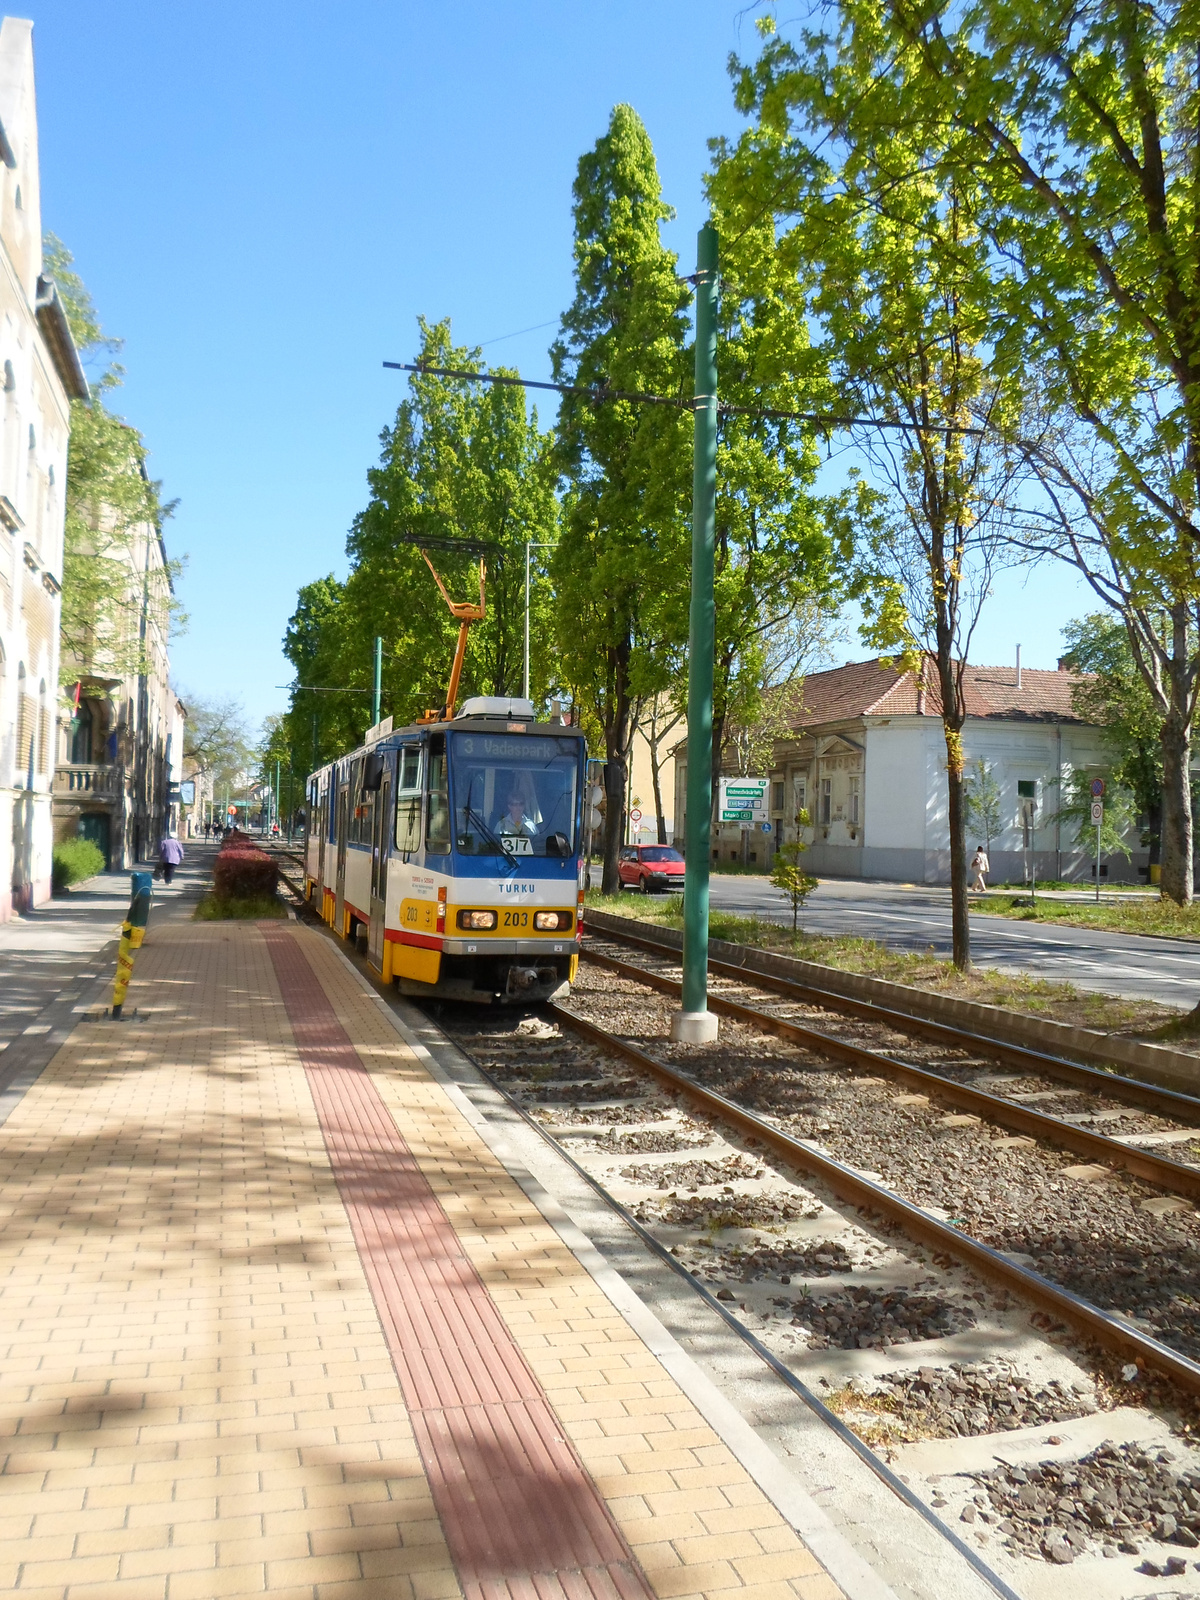 Szegedi villamosmegállók - Szent György tér